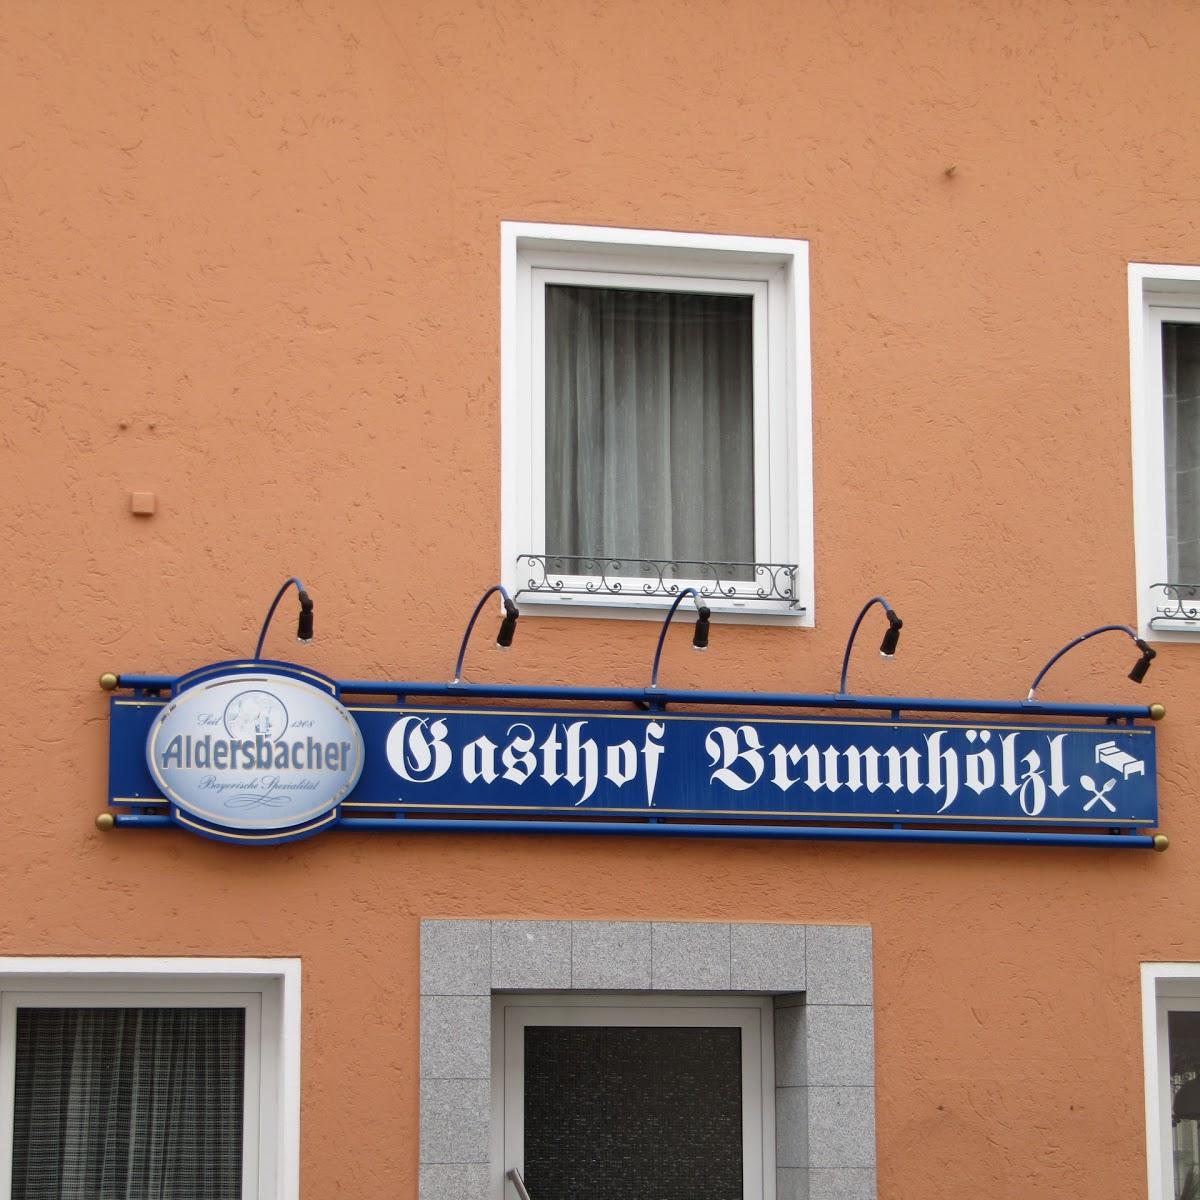 Restaurant "Gasthof Brunnhölzl - Inh. H.LEDERER" in Freyung